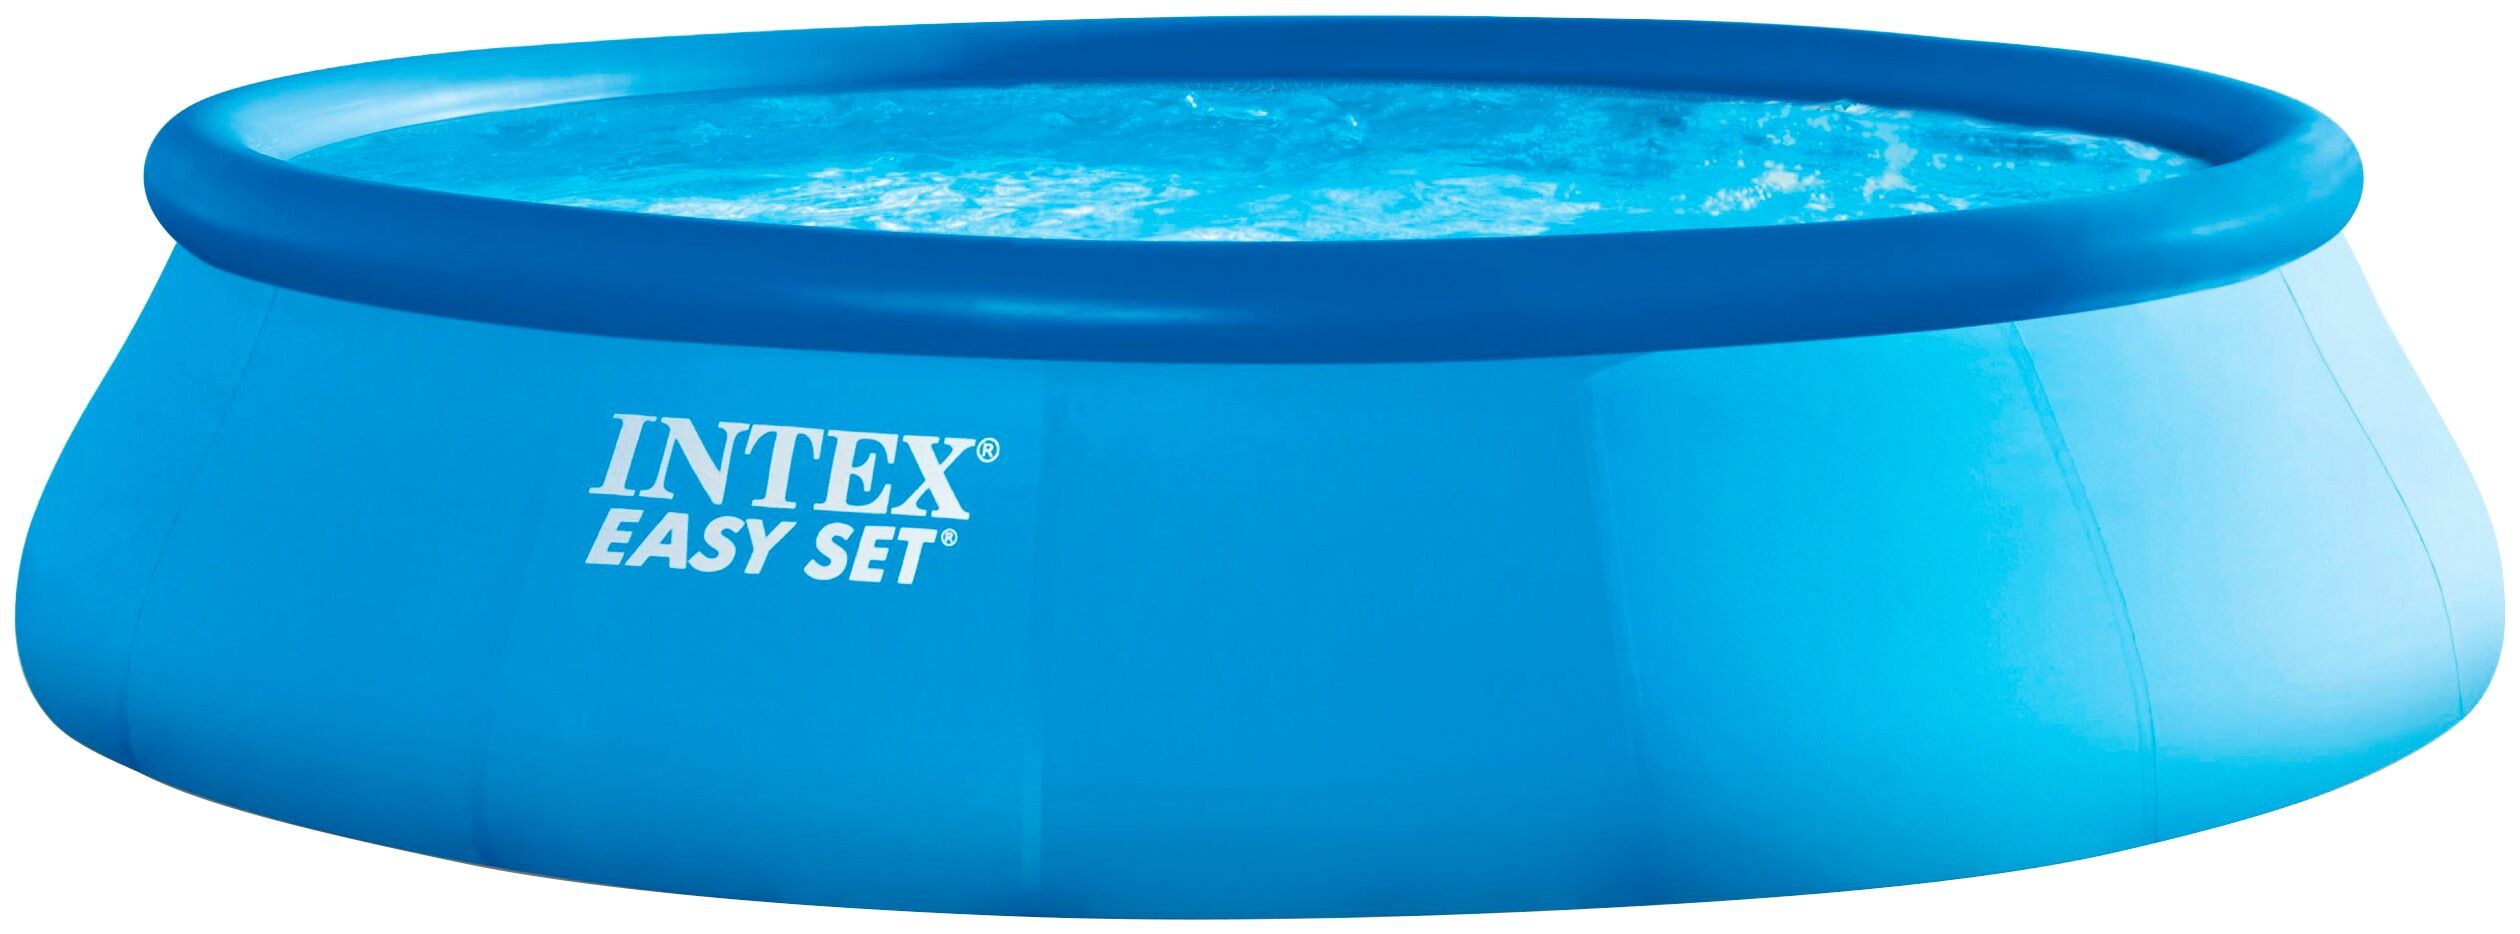 Intex Quick-Up Pool INTEX "Easy Set" Schwimmbecken Gr. Ø/B/H/L: 366 cm x Breite x Höhe 76 cm x Länge, 5600 l, blau Quick-Up-Pools ØxH: 366x76 cm